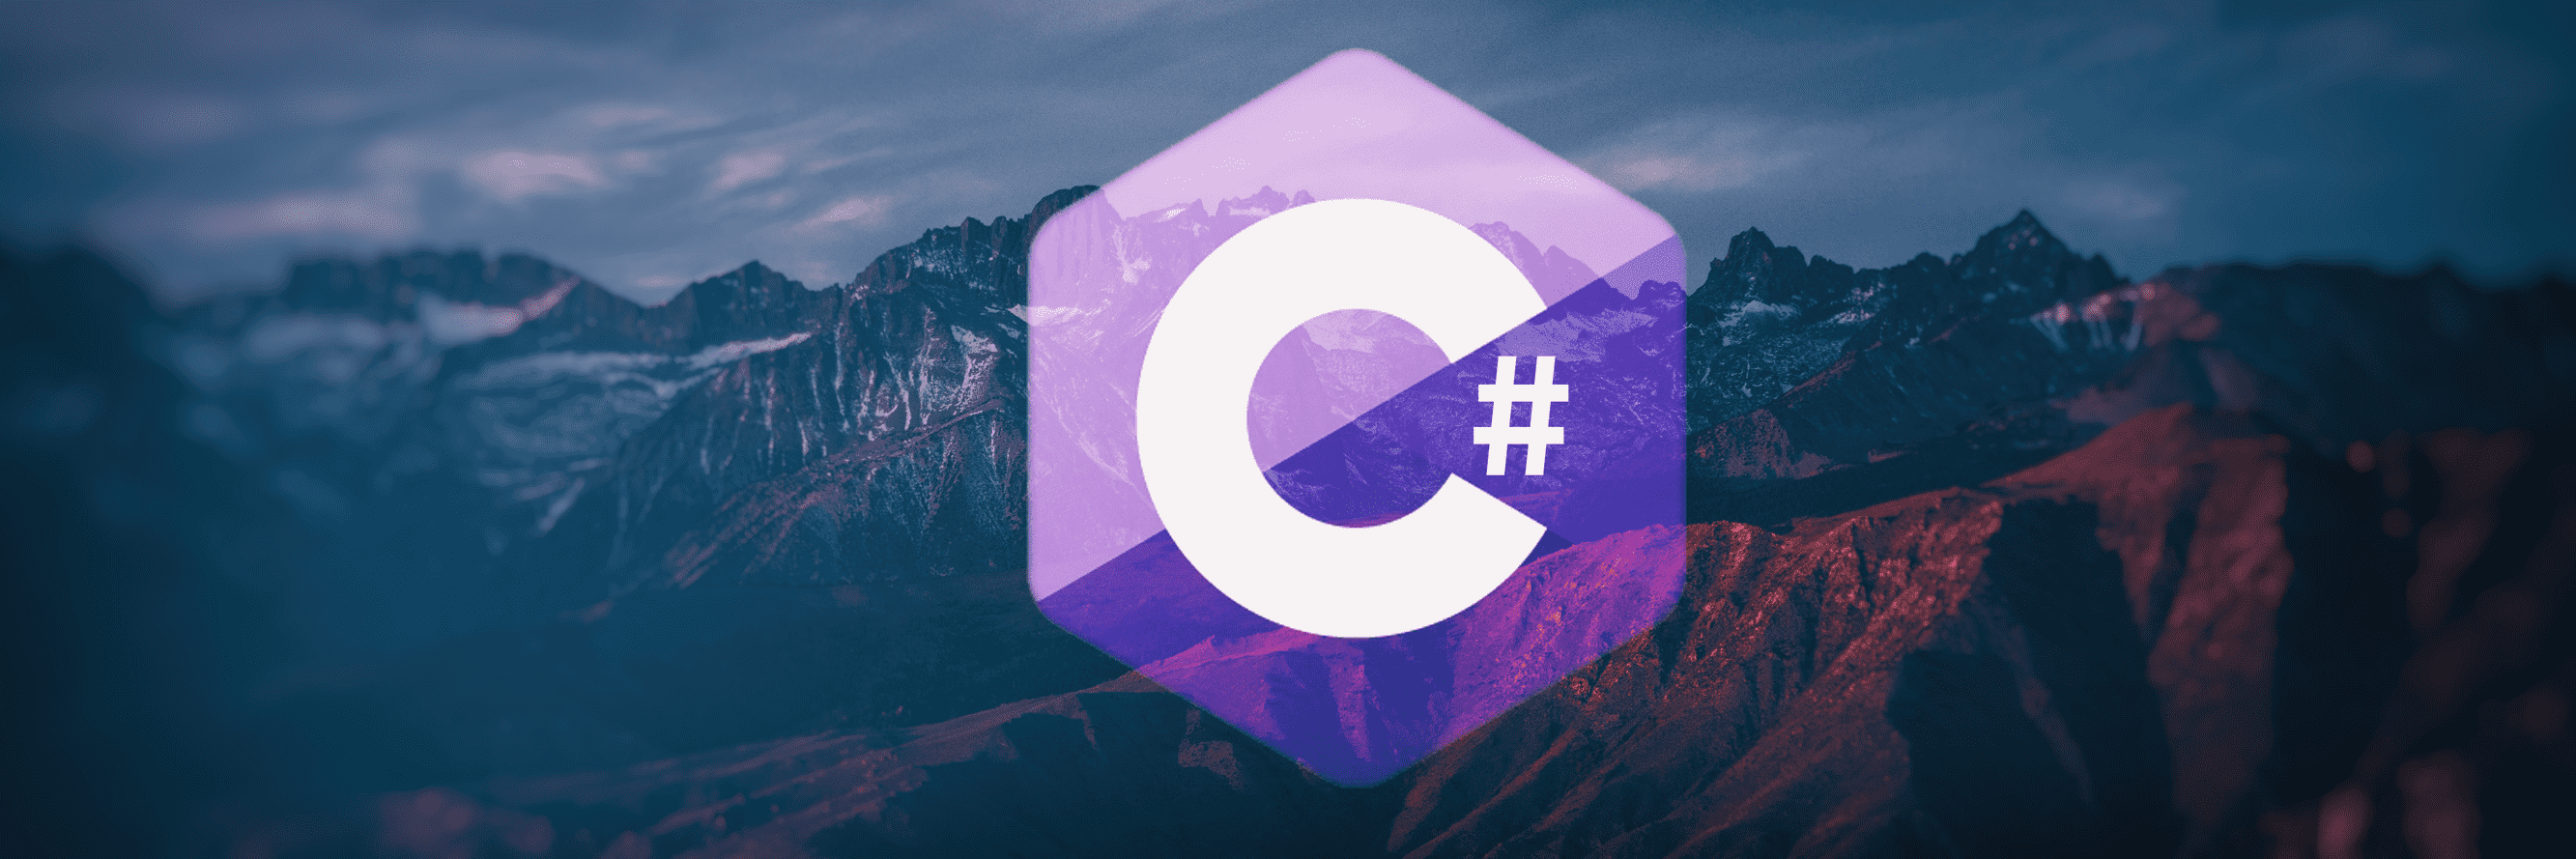 C# 介绍、应用领域、入门、语法、输出和注释详解